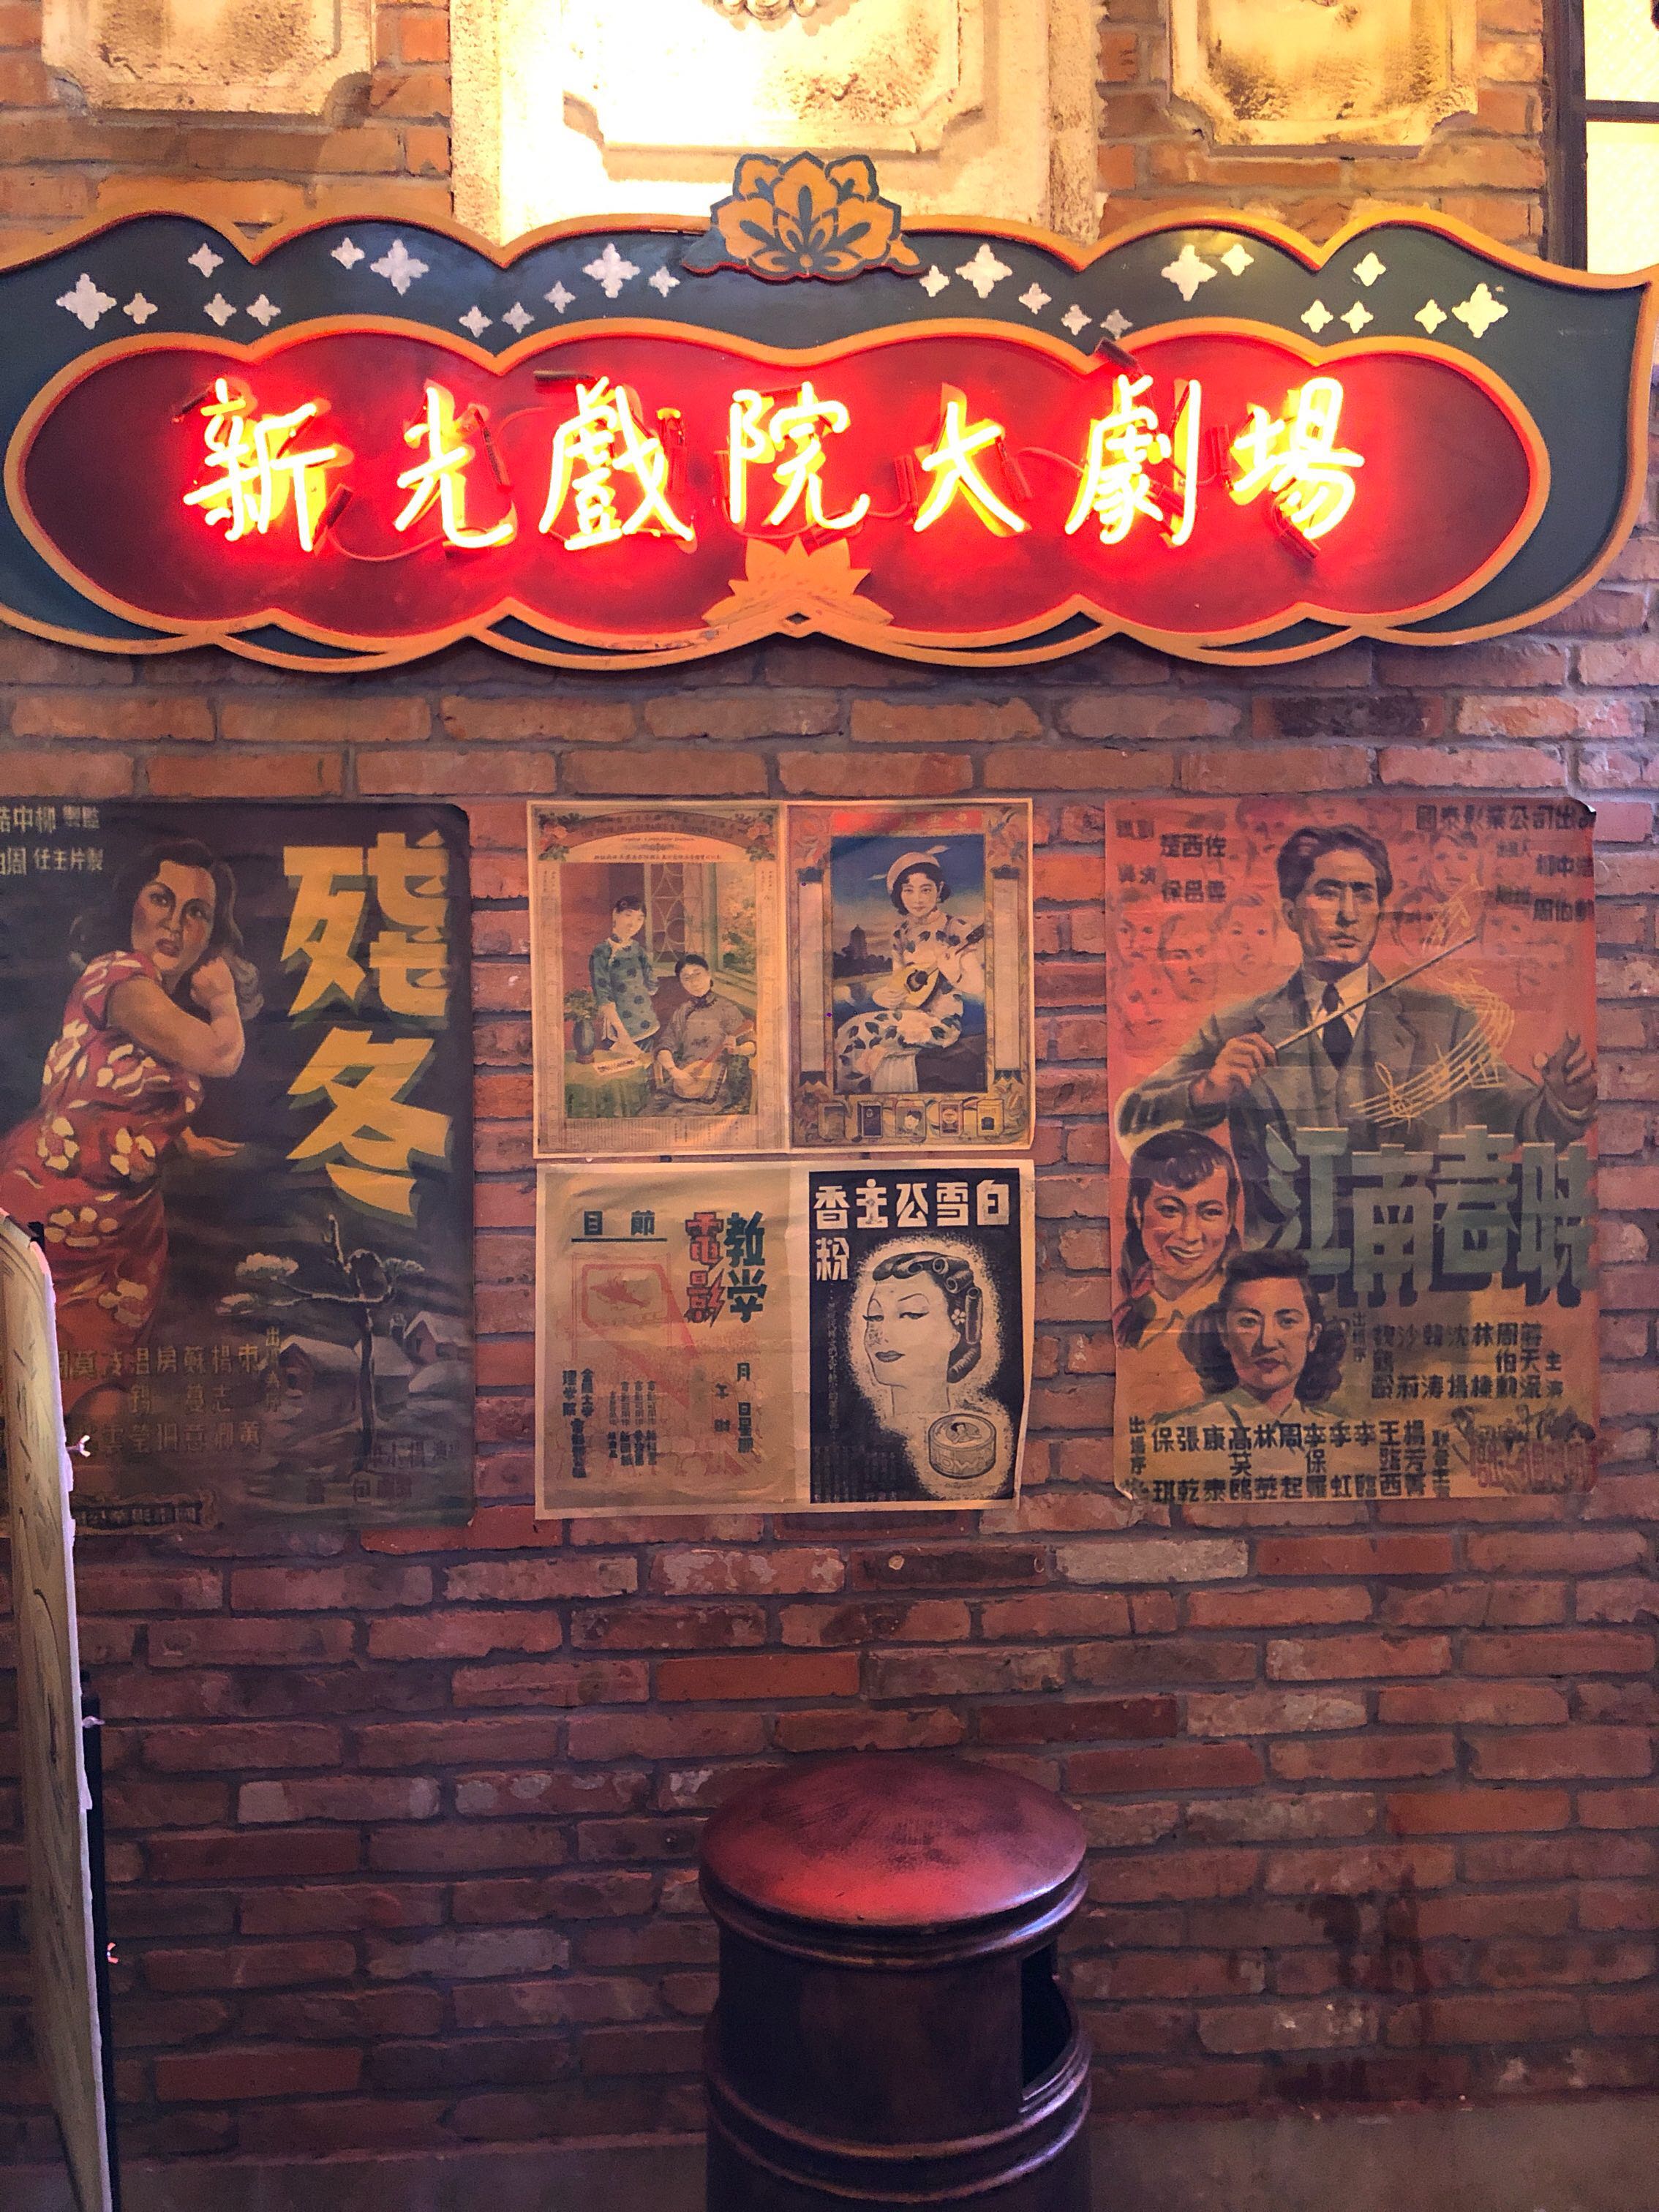 上海一条电影场景老街1192弄,里面复古场景彷佛置身里